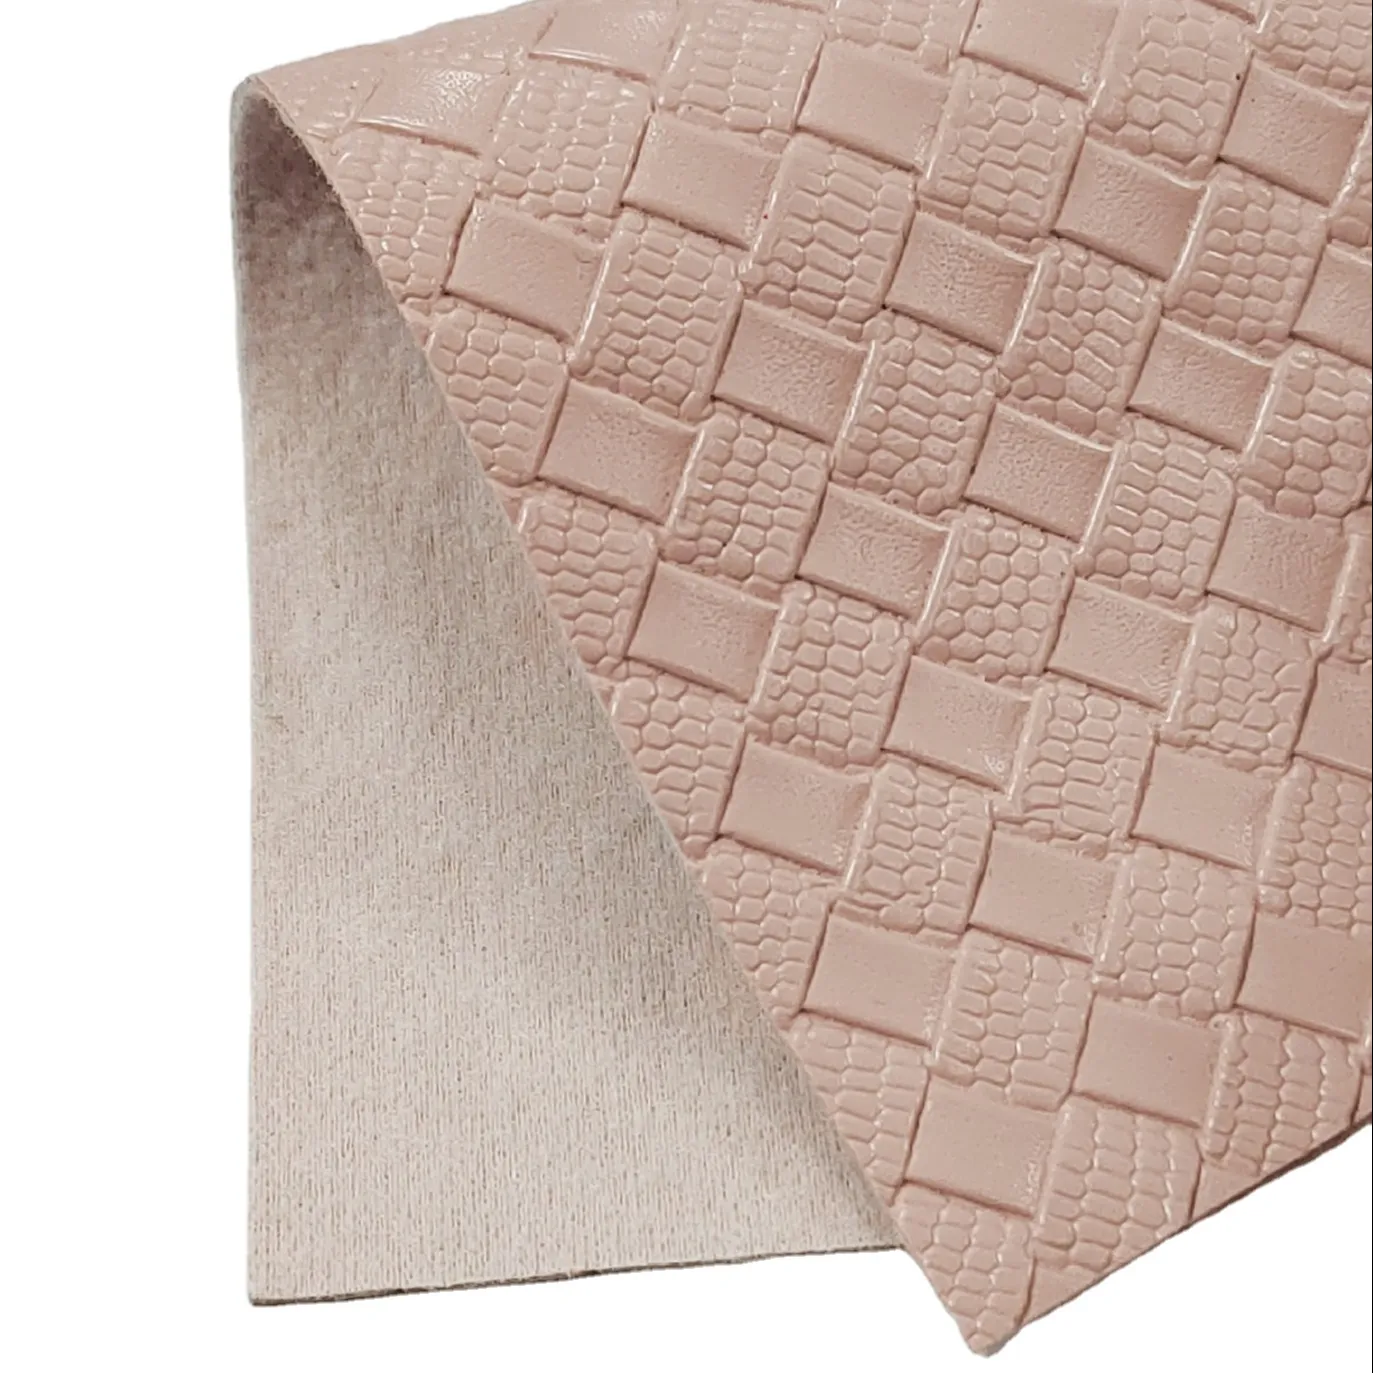 Textura de tejido ynthetic para la fabricación de zapatos, material de cuero a prueba de agua